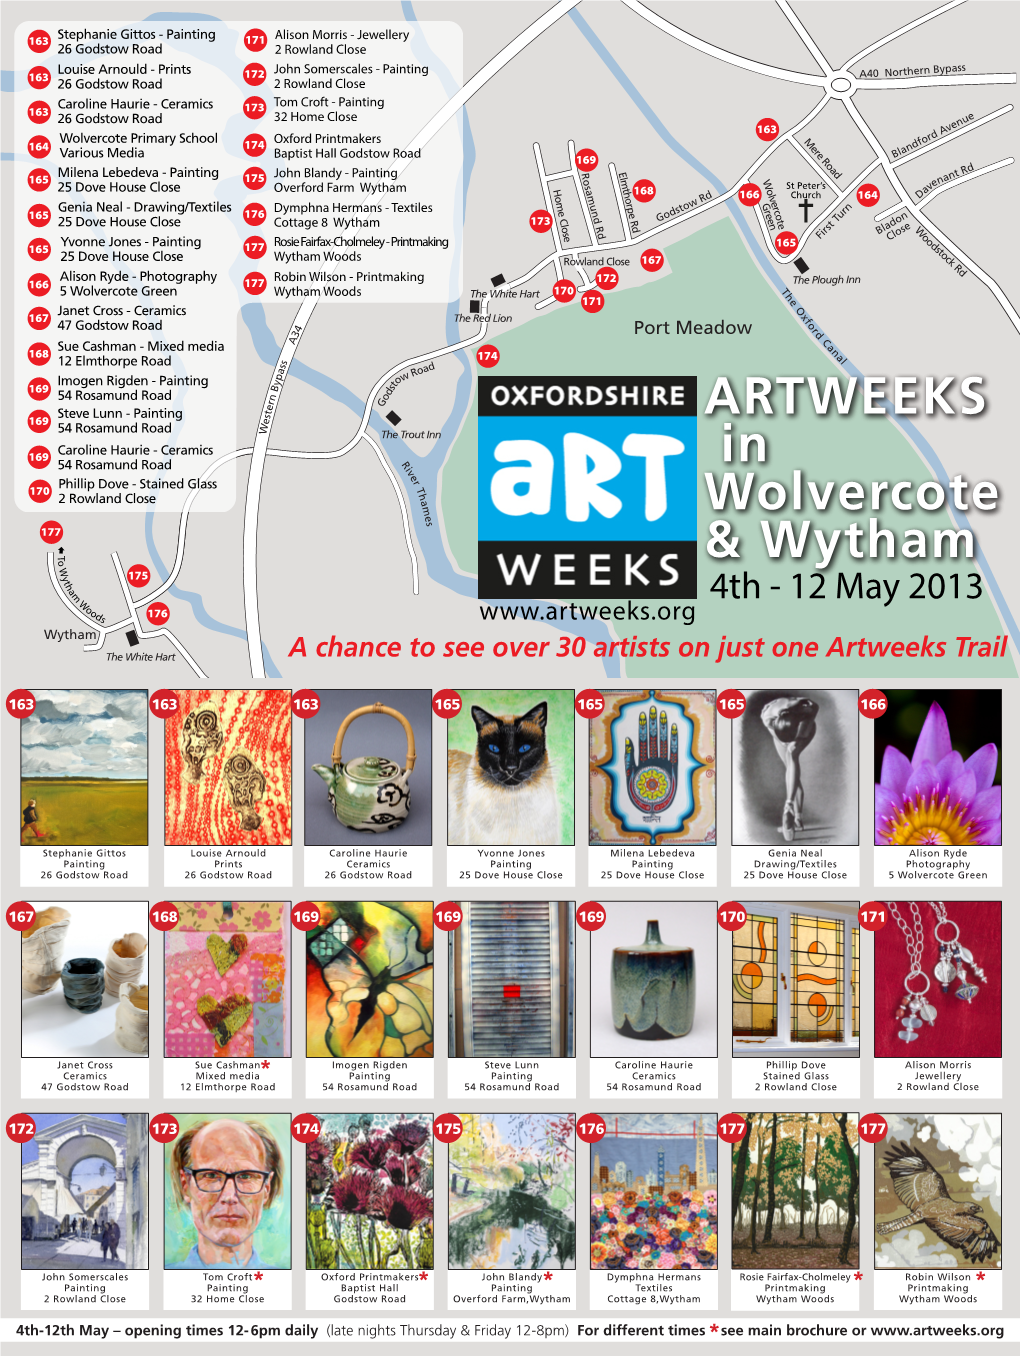 ARTWEEKS in Wolvercote & Wytham